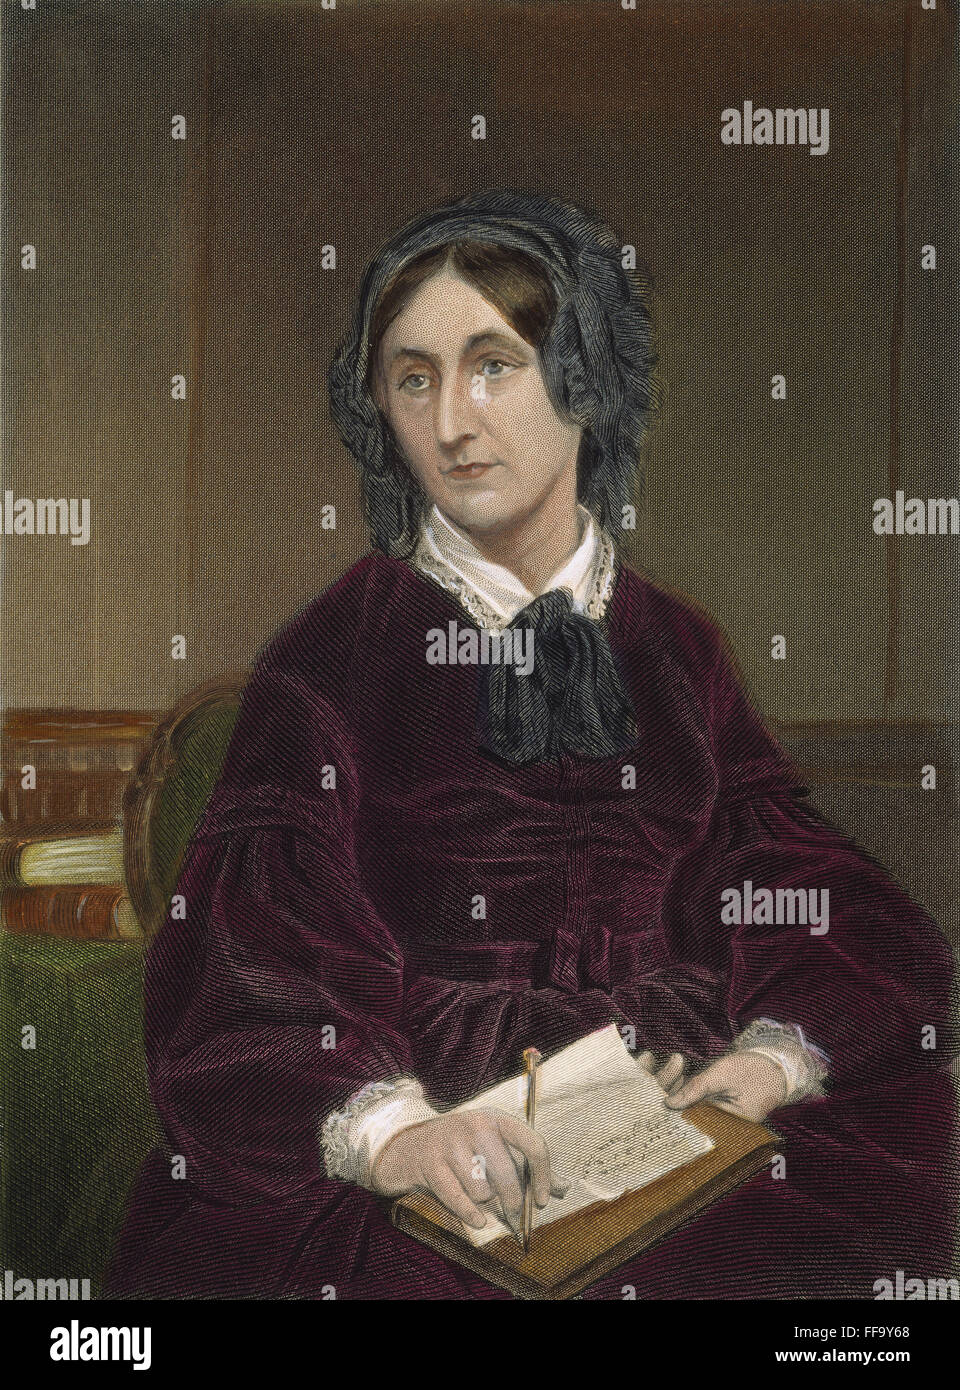 MARY FAIRFAX SOMERVILLE /n(1780-1872). Écrivain écossais sur les mathématiques et sciences physiques. Gravure sur acier, American, 1874. Banque D'Images